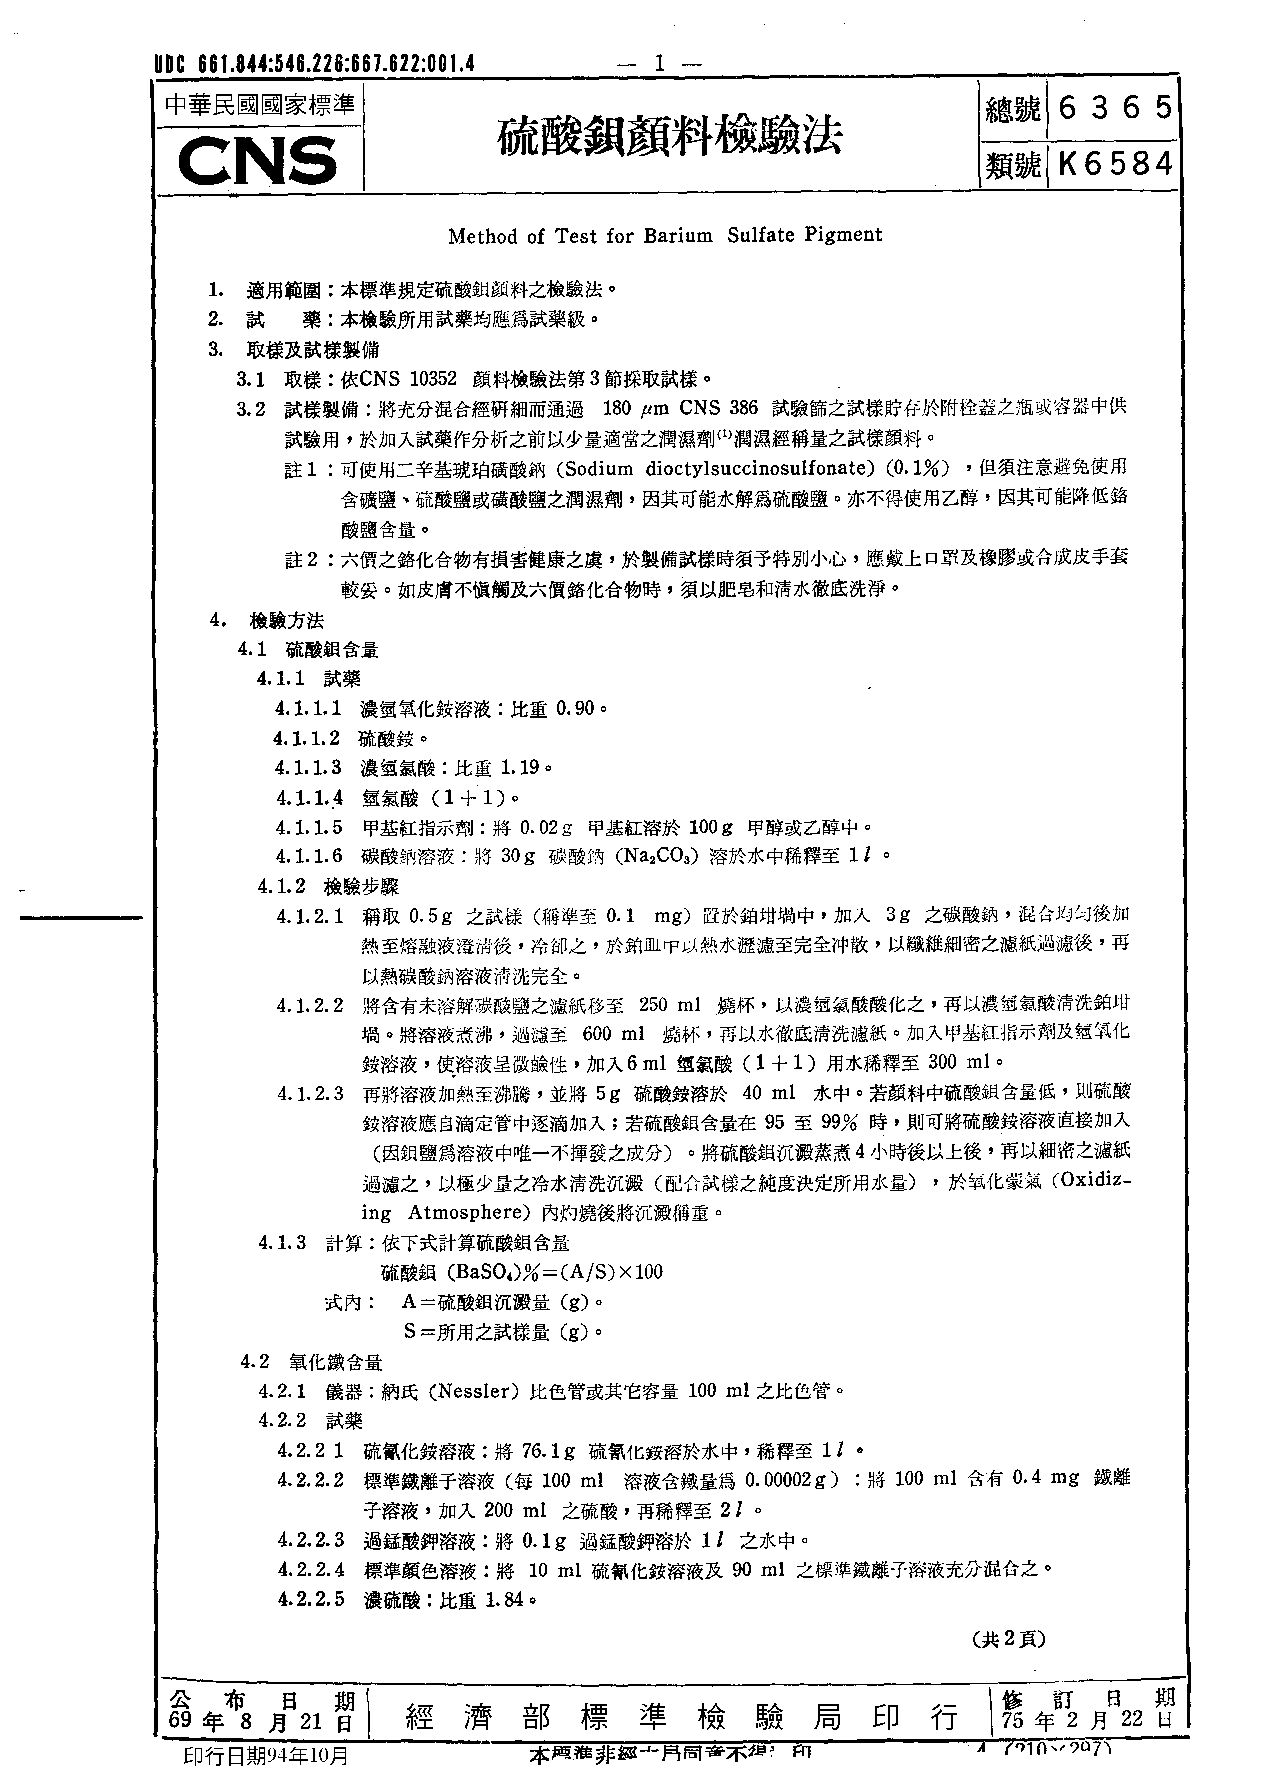 CNS 6365-1986封面图